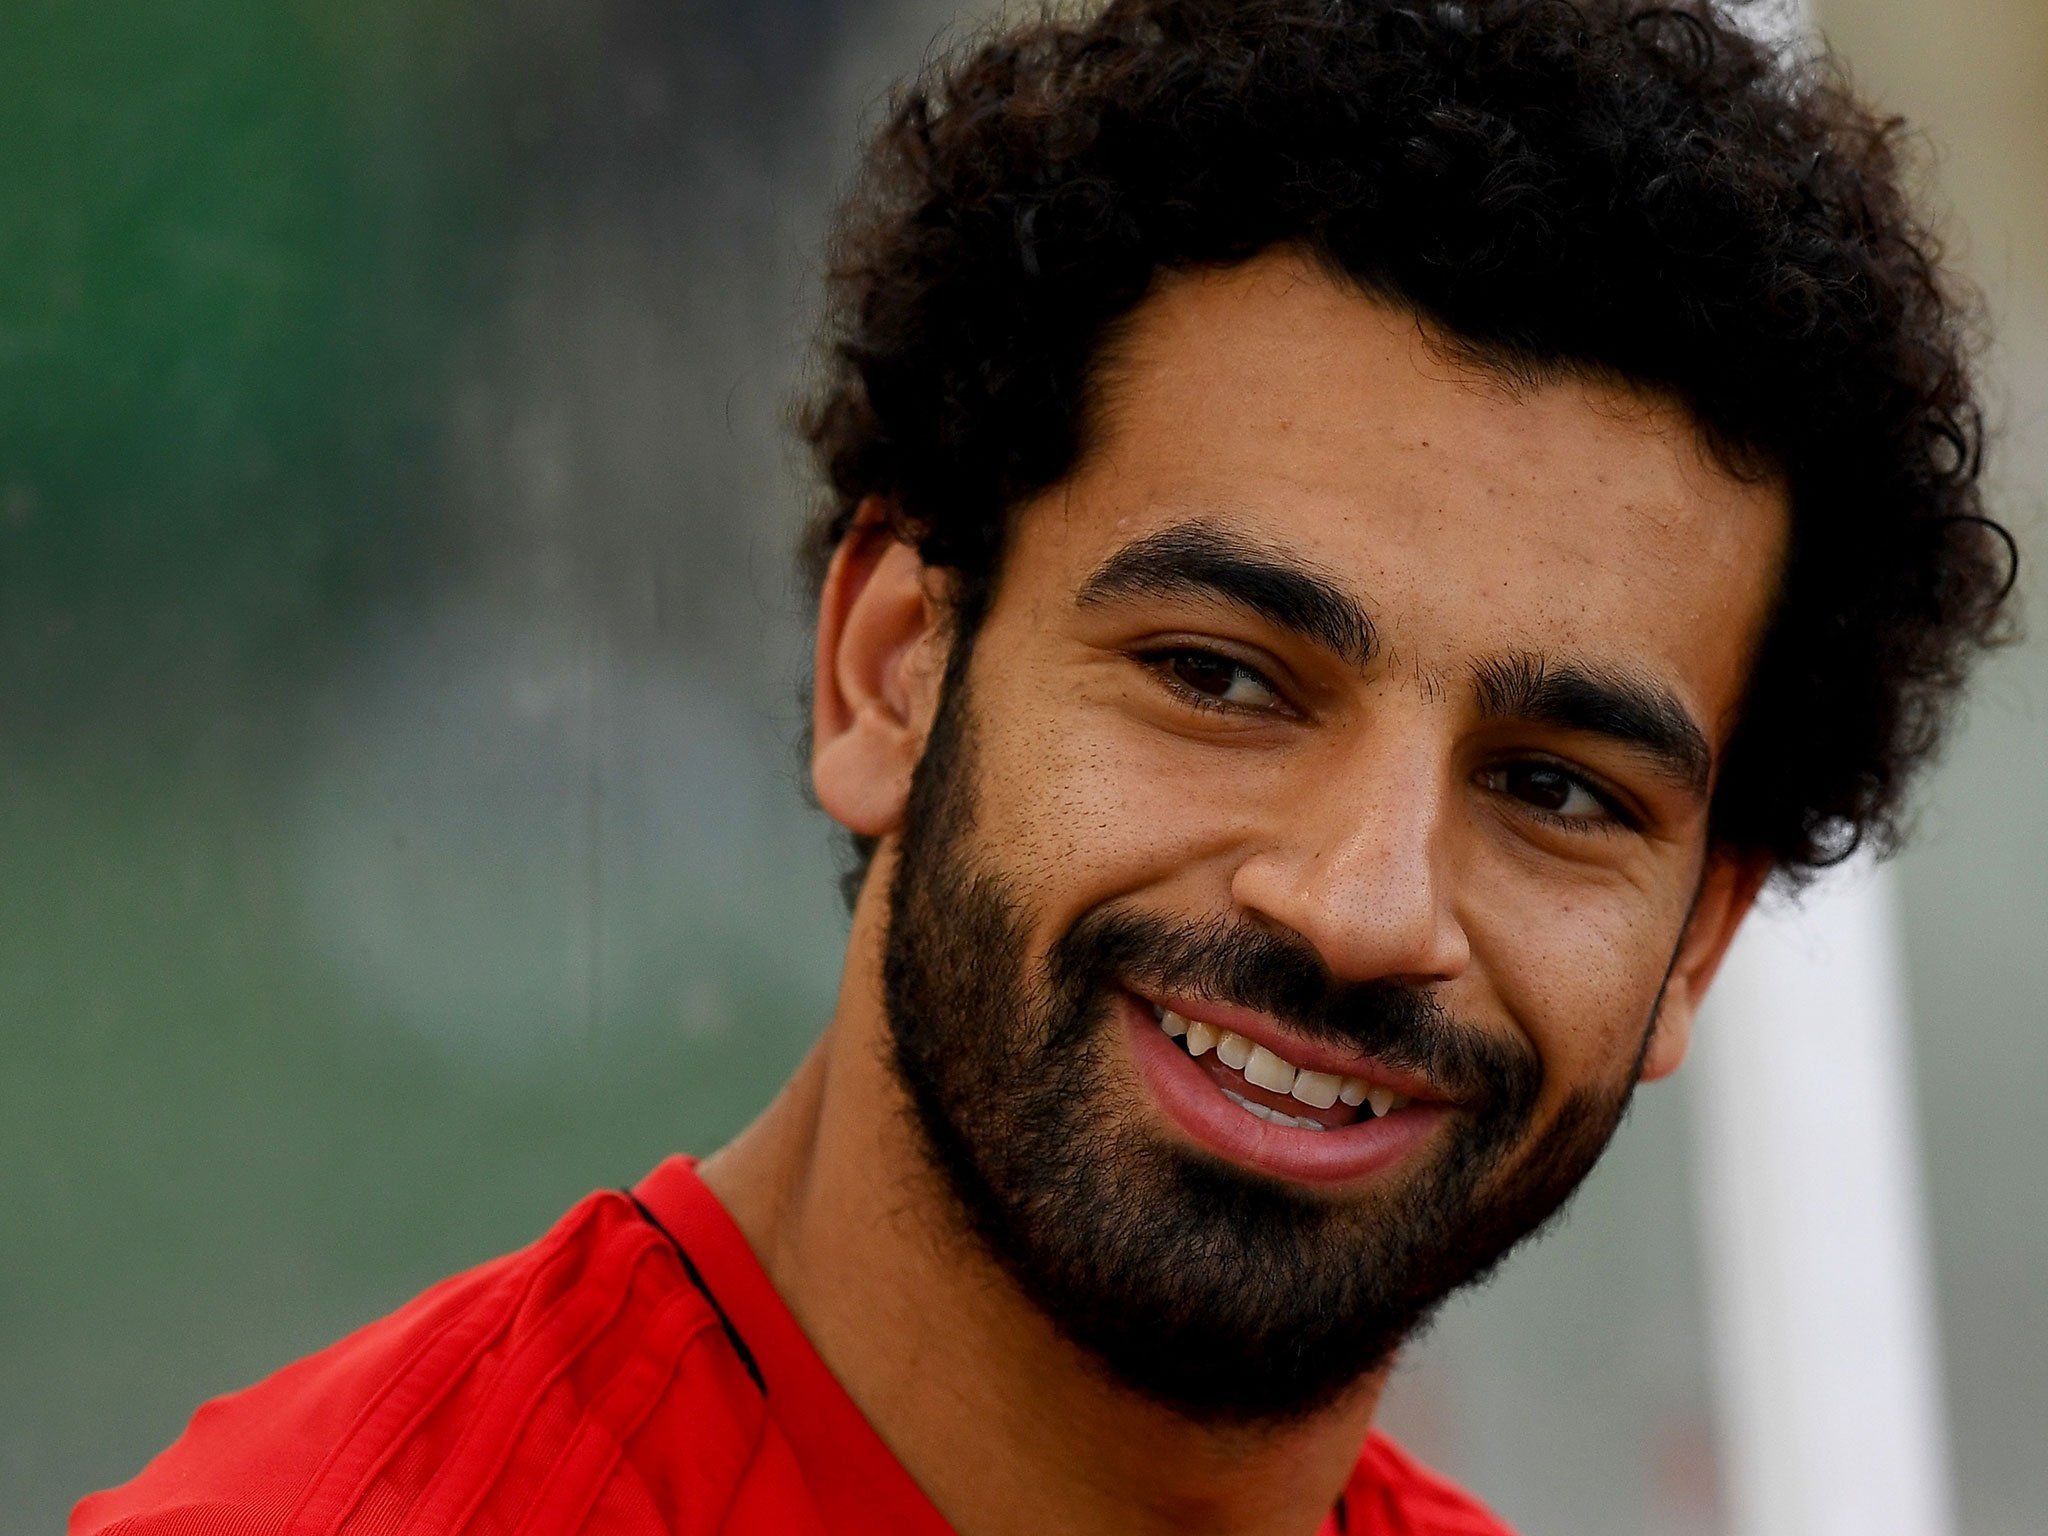 Mohamed Salah, football player